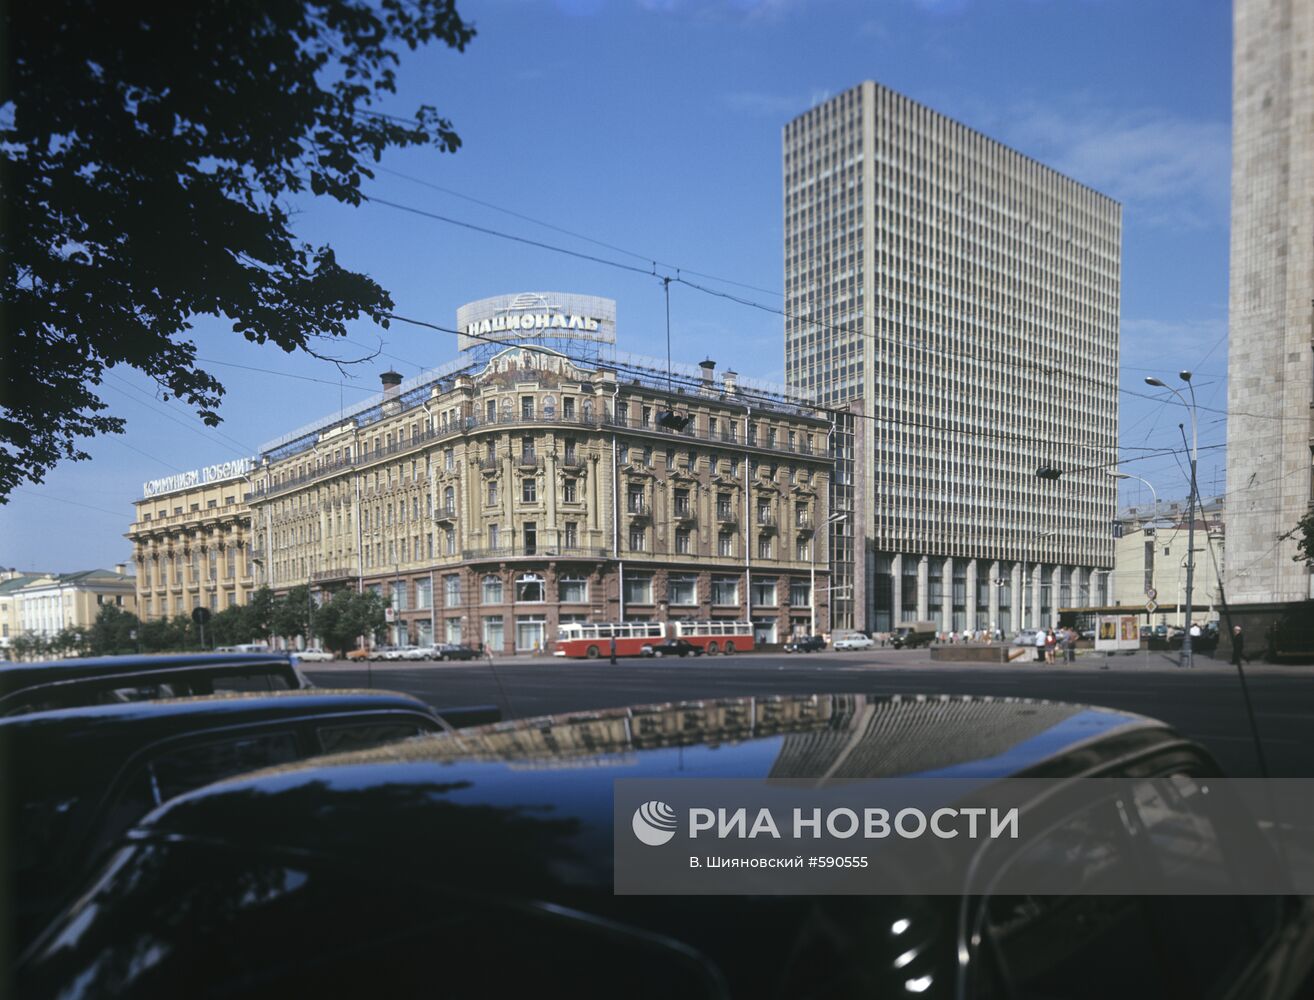 Гостиницы "Националь" и "Интурист" в Москве